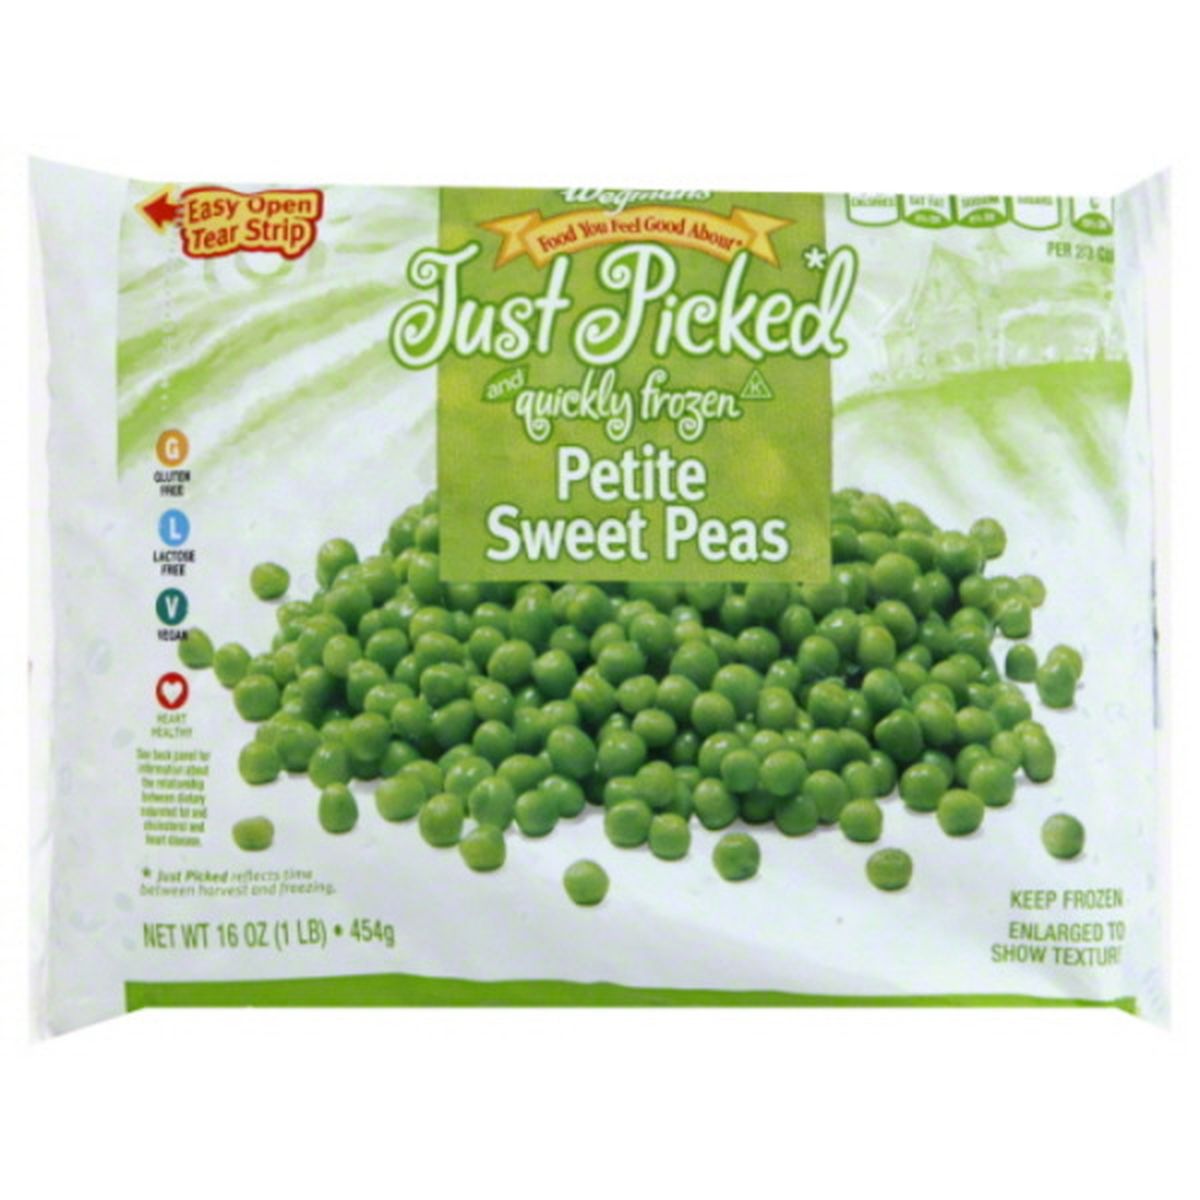 Calories in Wegmans Frozen Petite Sweet Peas